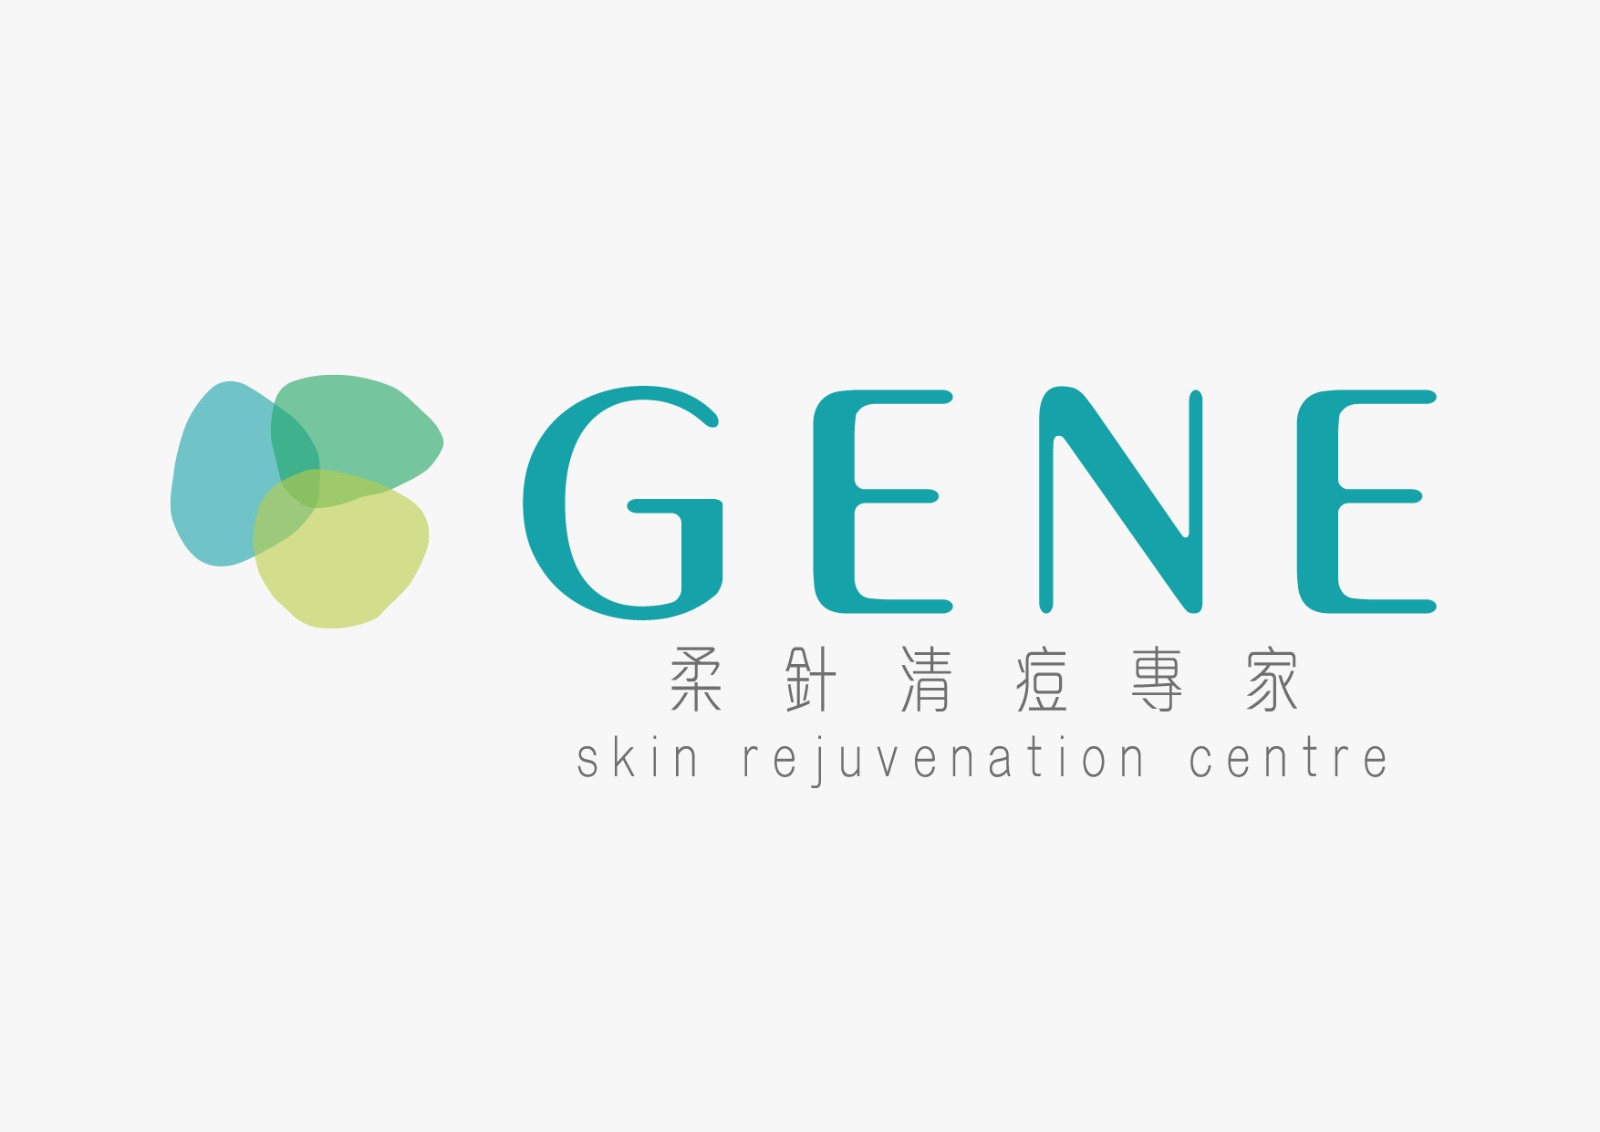 中医外科: GENE Skin